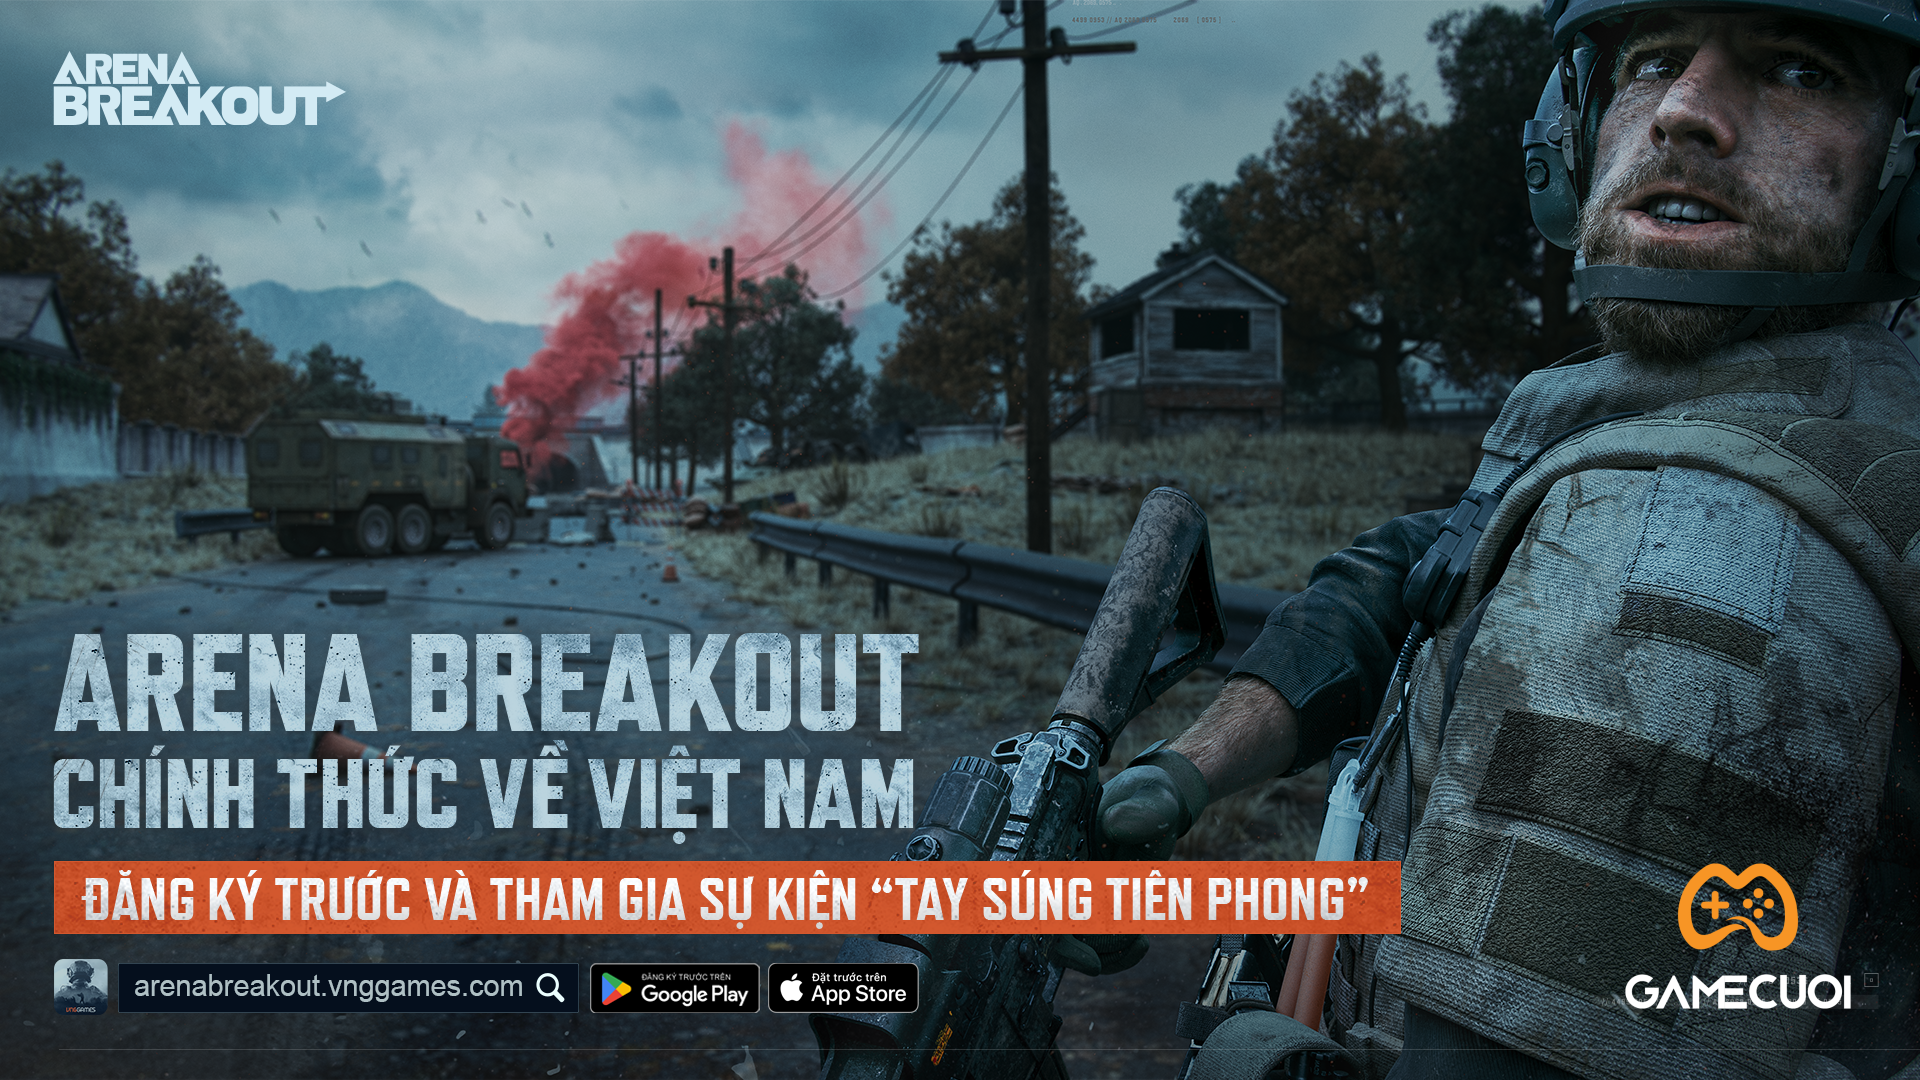 VNGGames mở cửa đăng ký trước Arena Breakout – Game FPS trên mobile có chơi giống Escape from Tarko